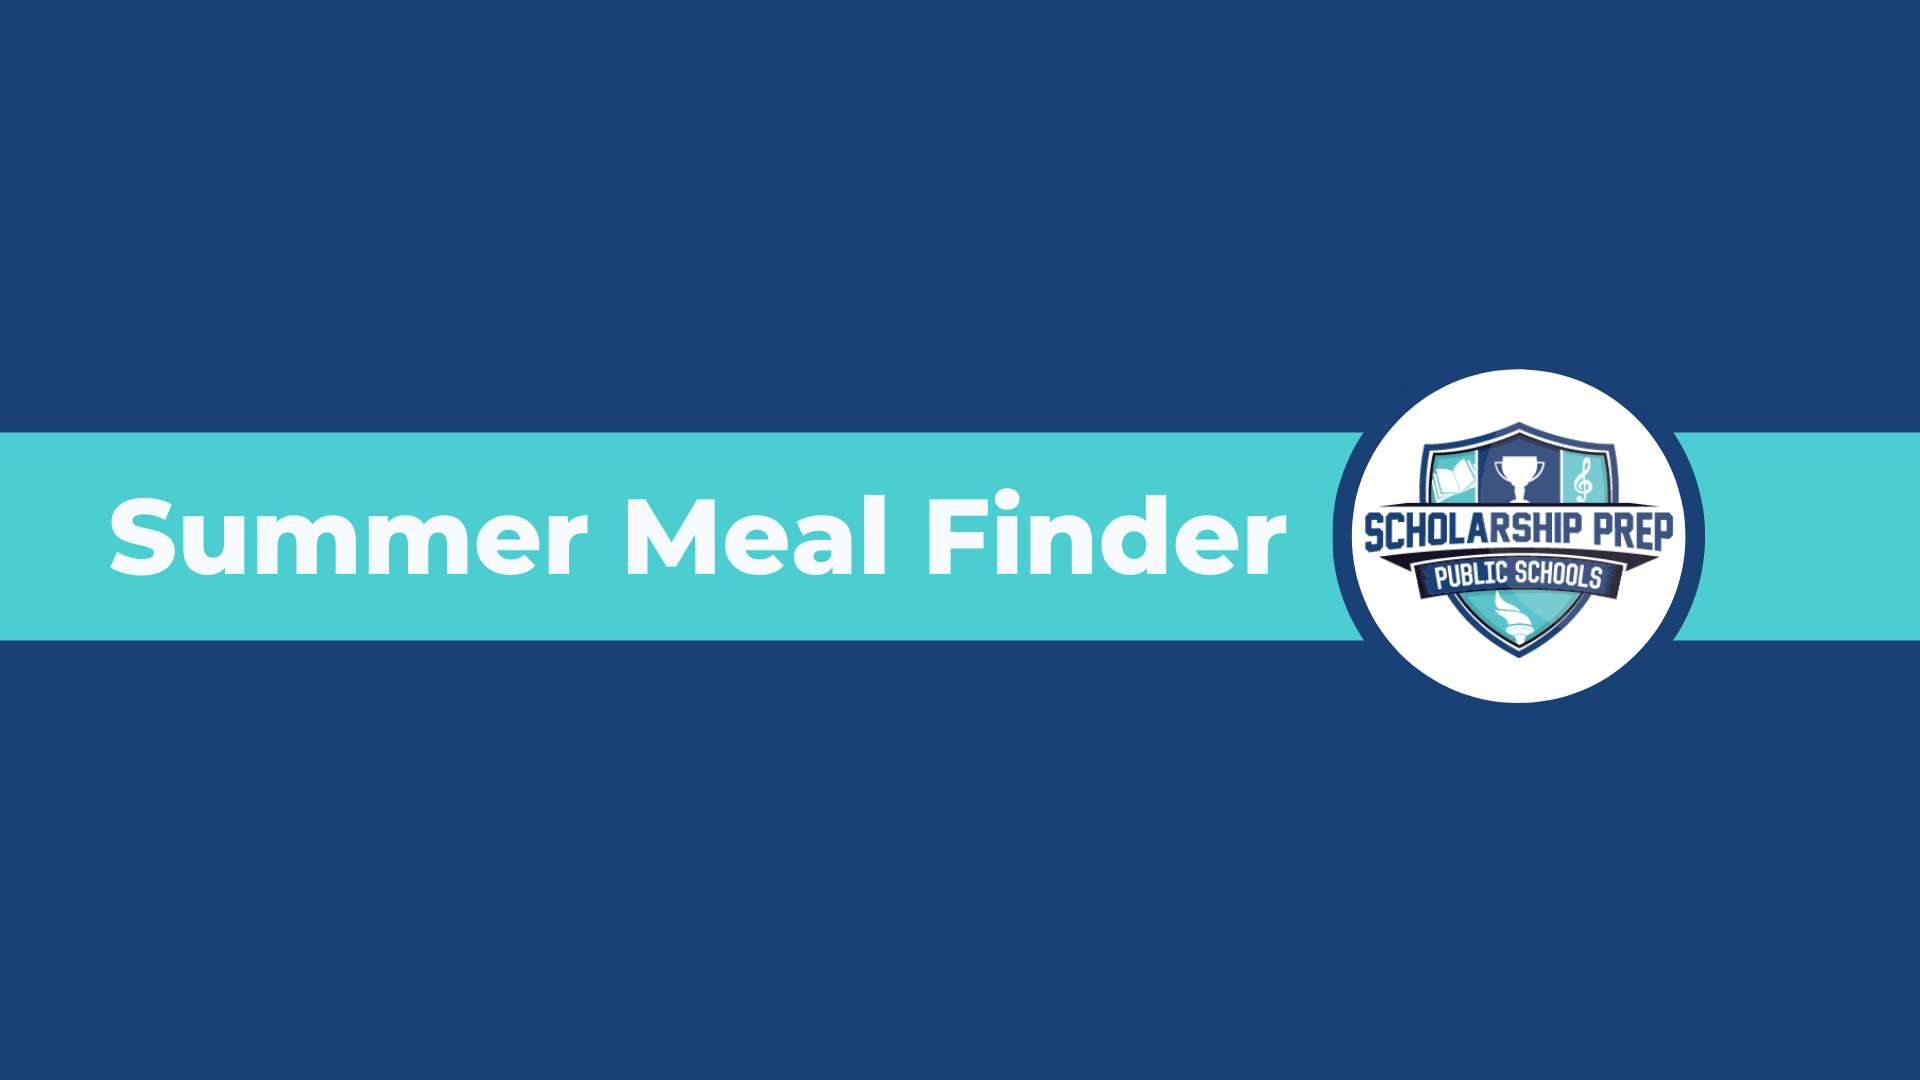 Summer Meal Finder Information